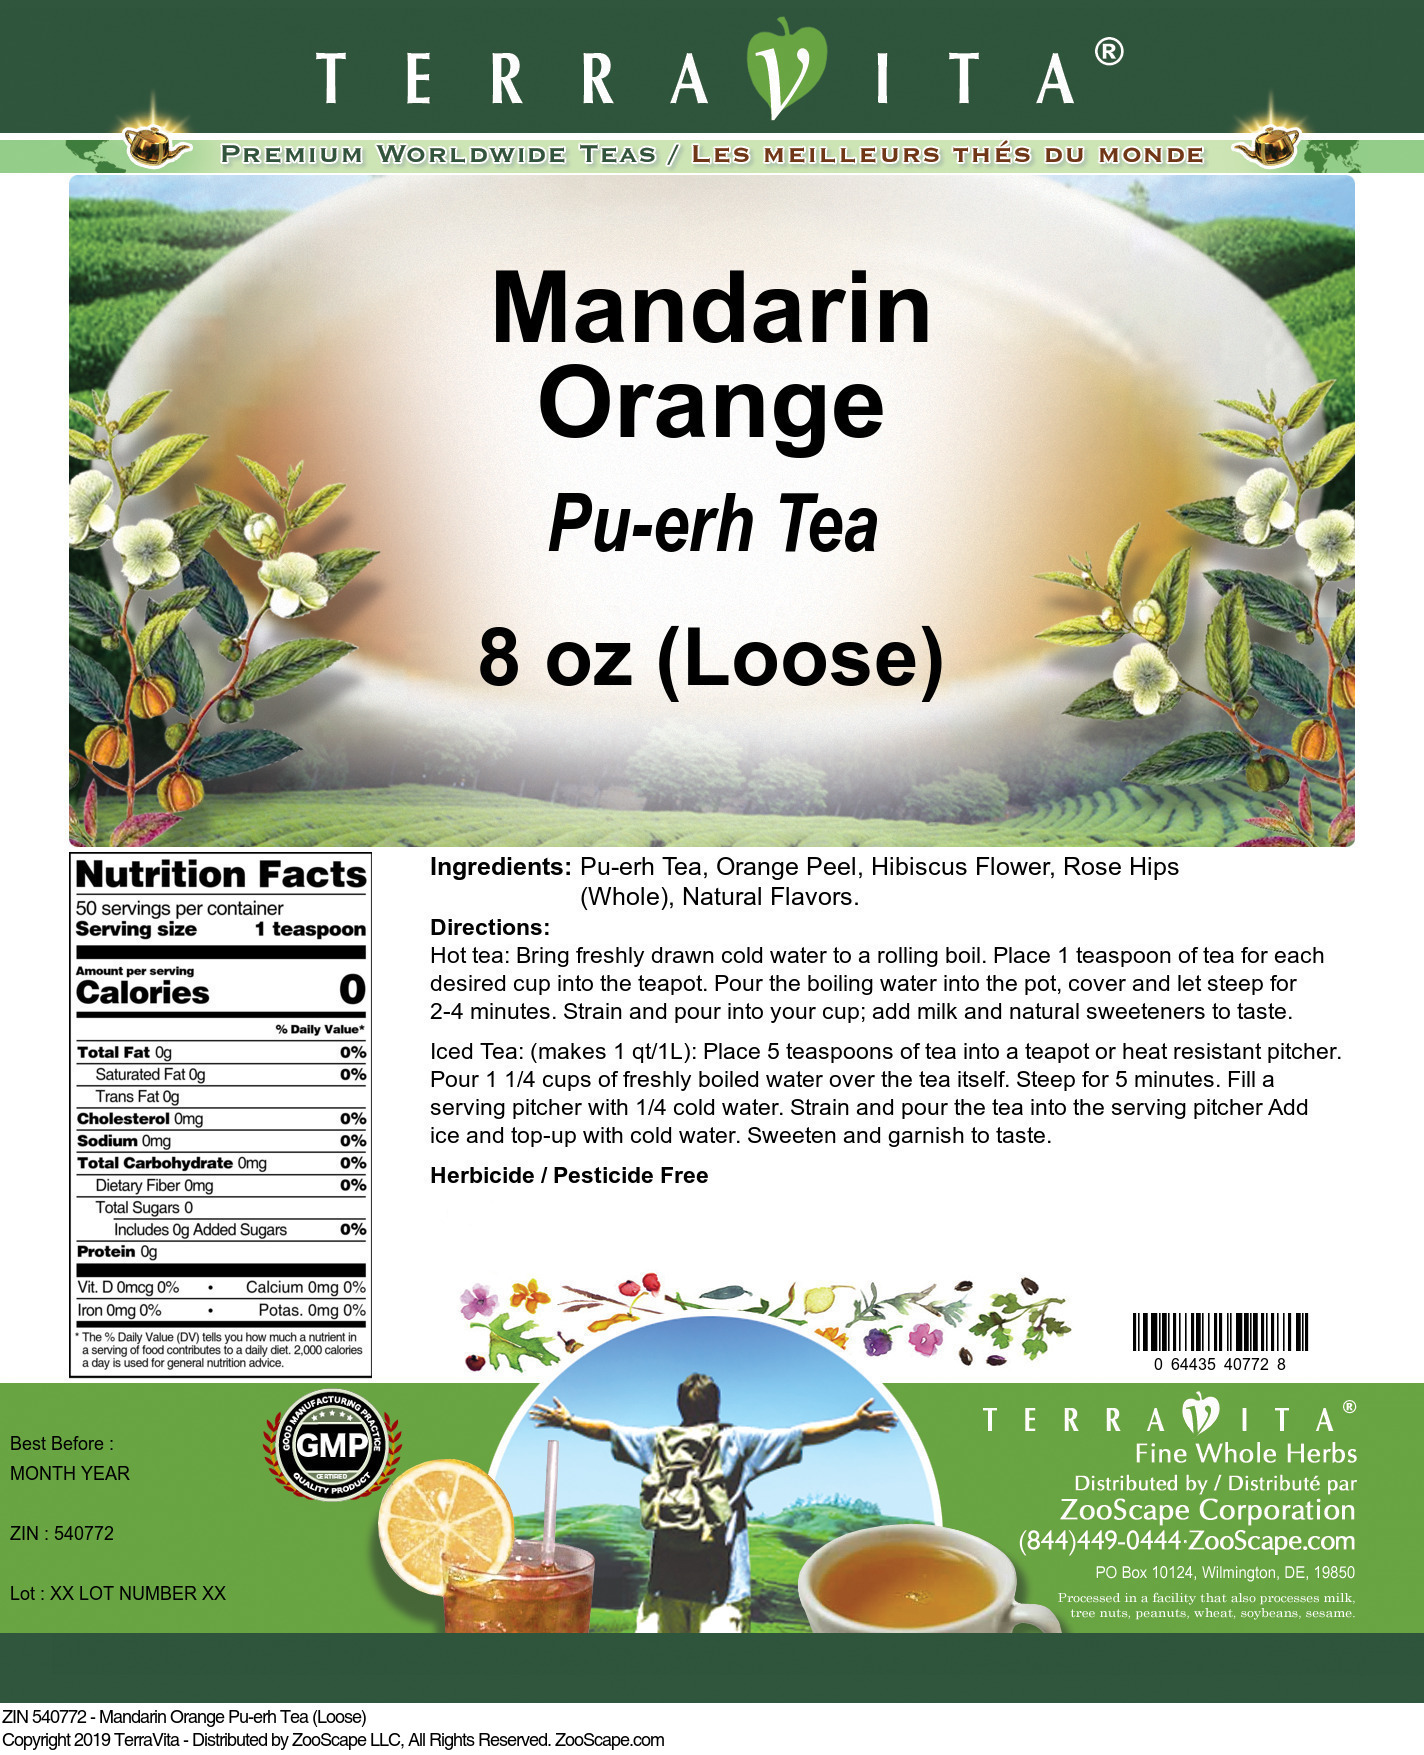 Mandarin Orange Pu-erh Tea (Loose) - Label